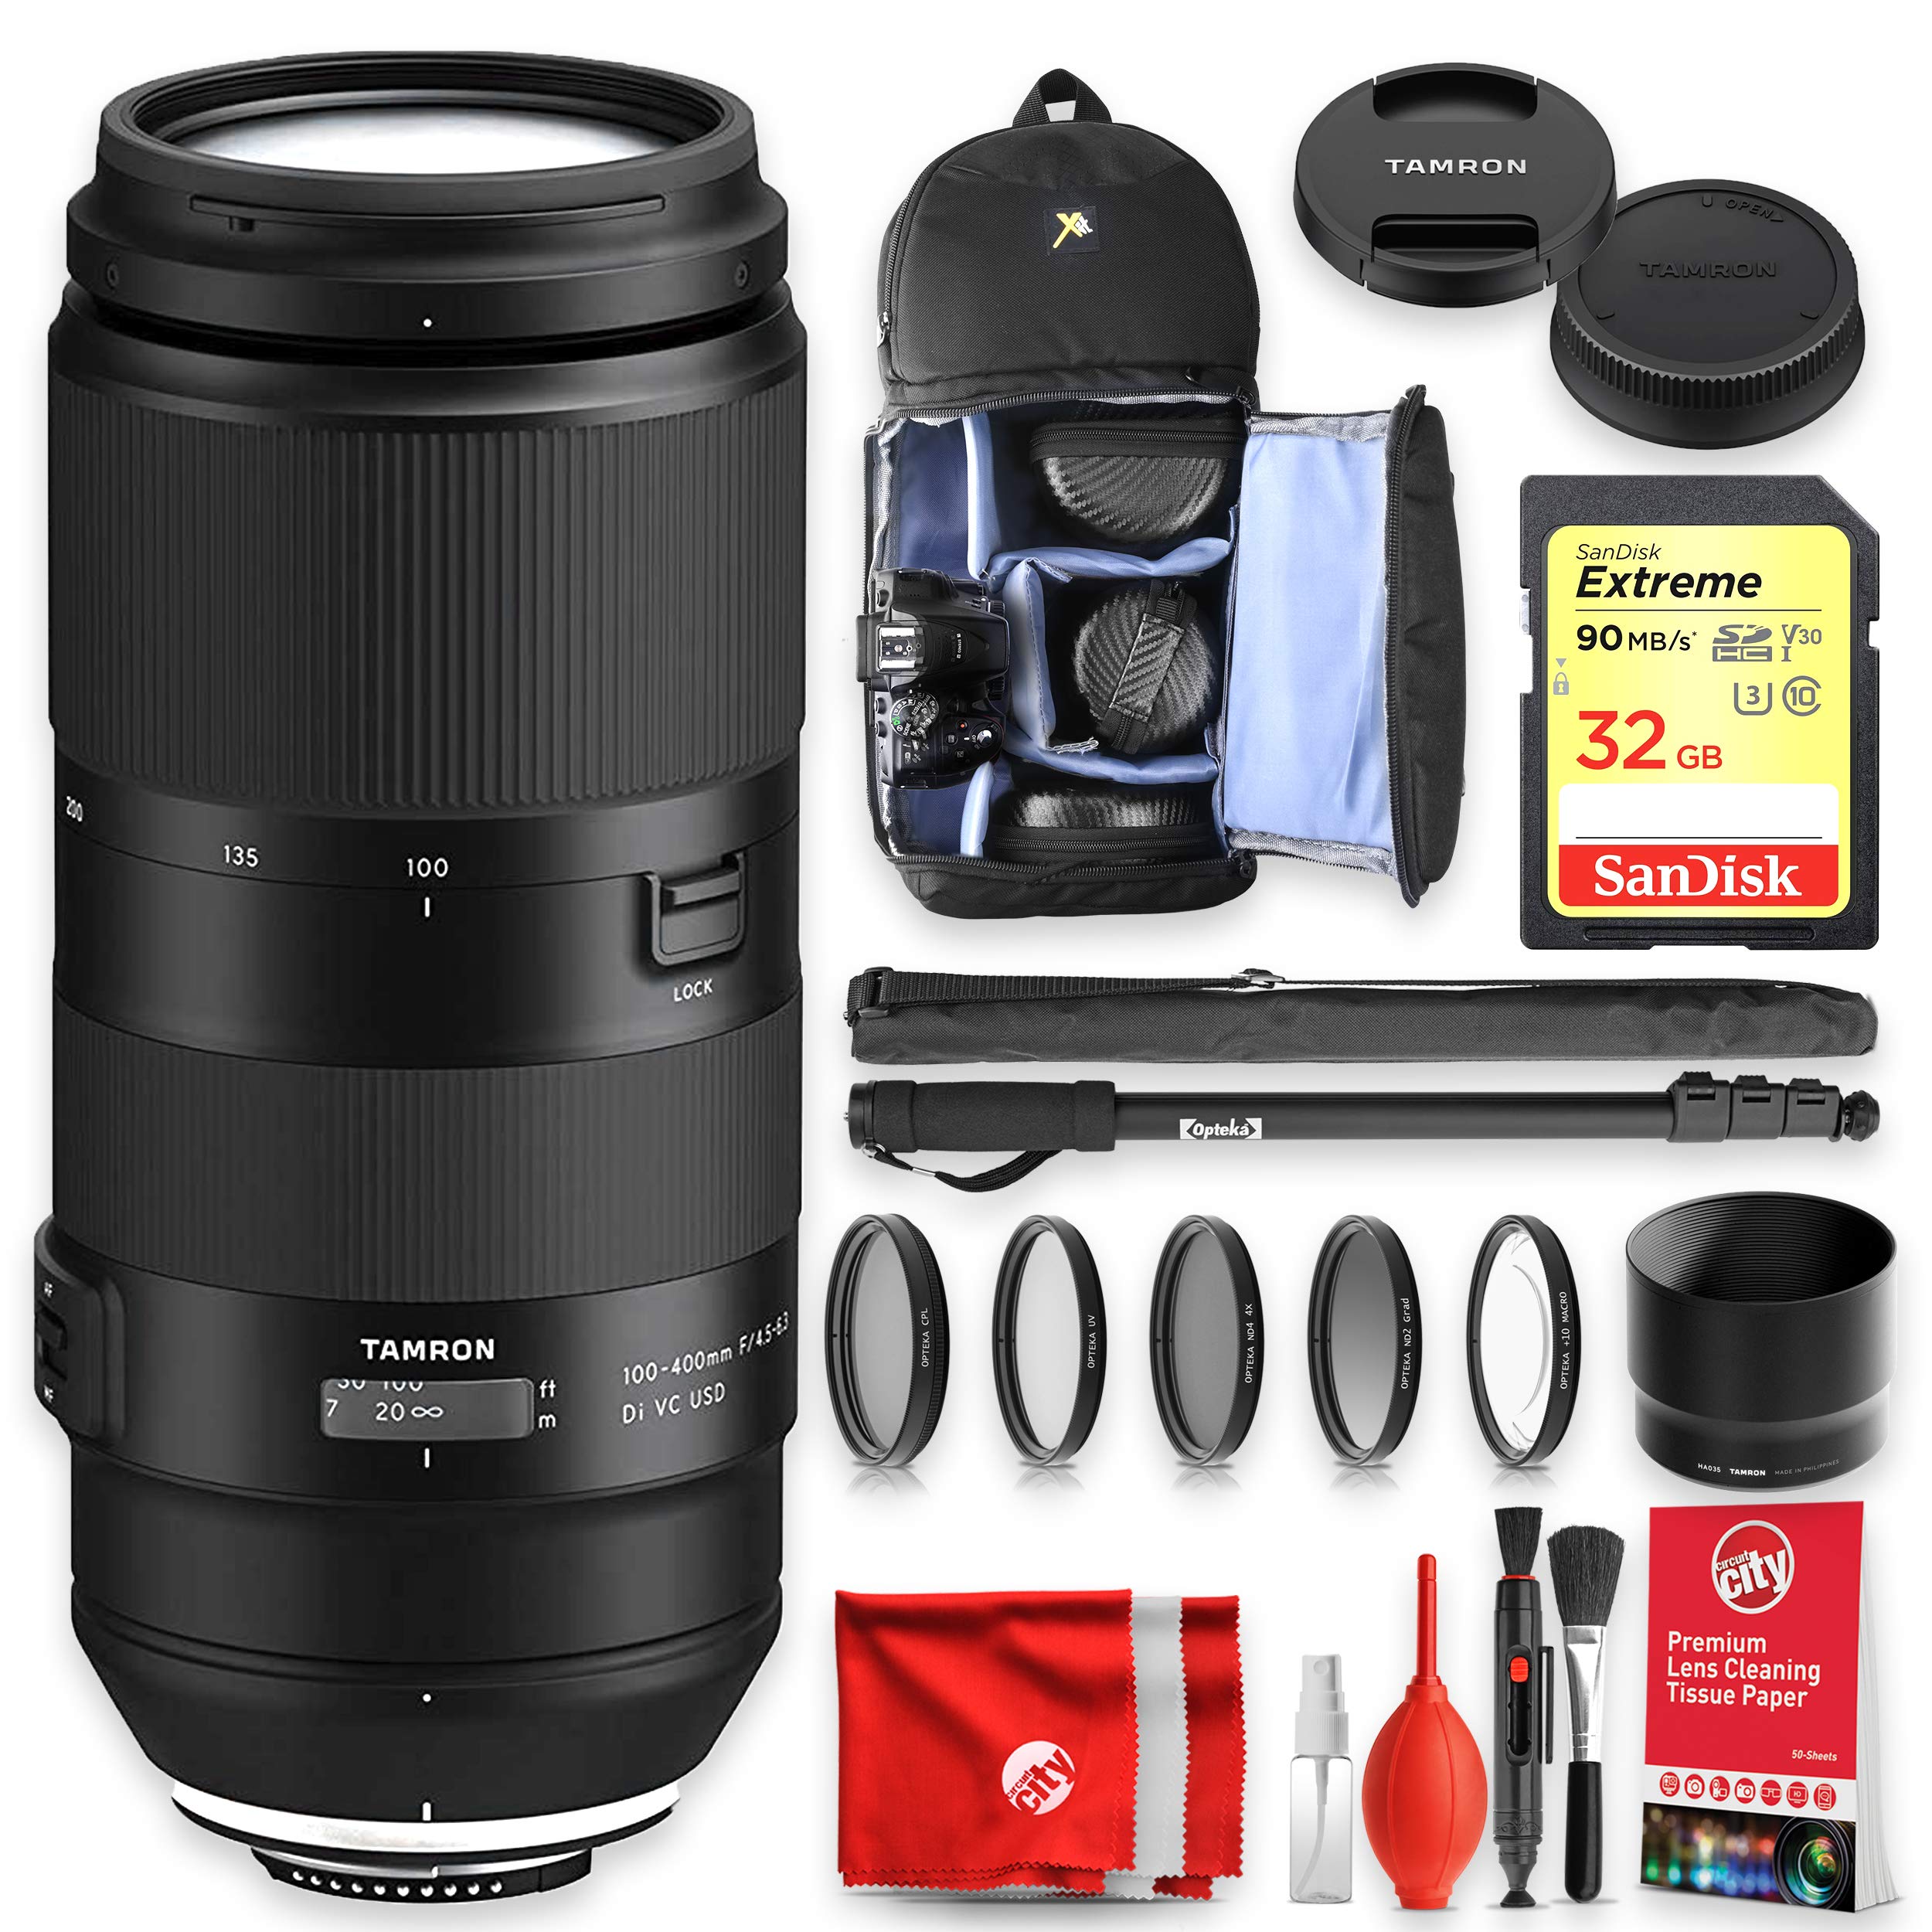 タムロン Tamron 100-400mm F4.5-6.3 VC USD Telephoto Zoom Lens for Nikon with Sandisk Extreme 32GB Memory Backpack Acce